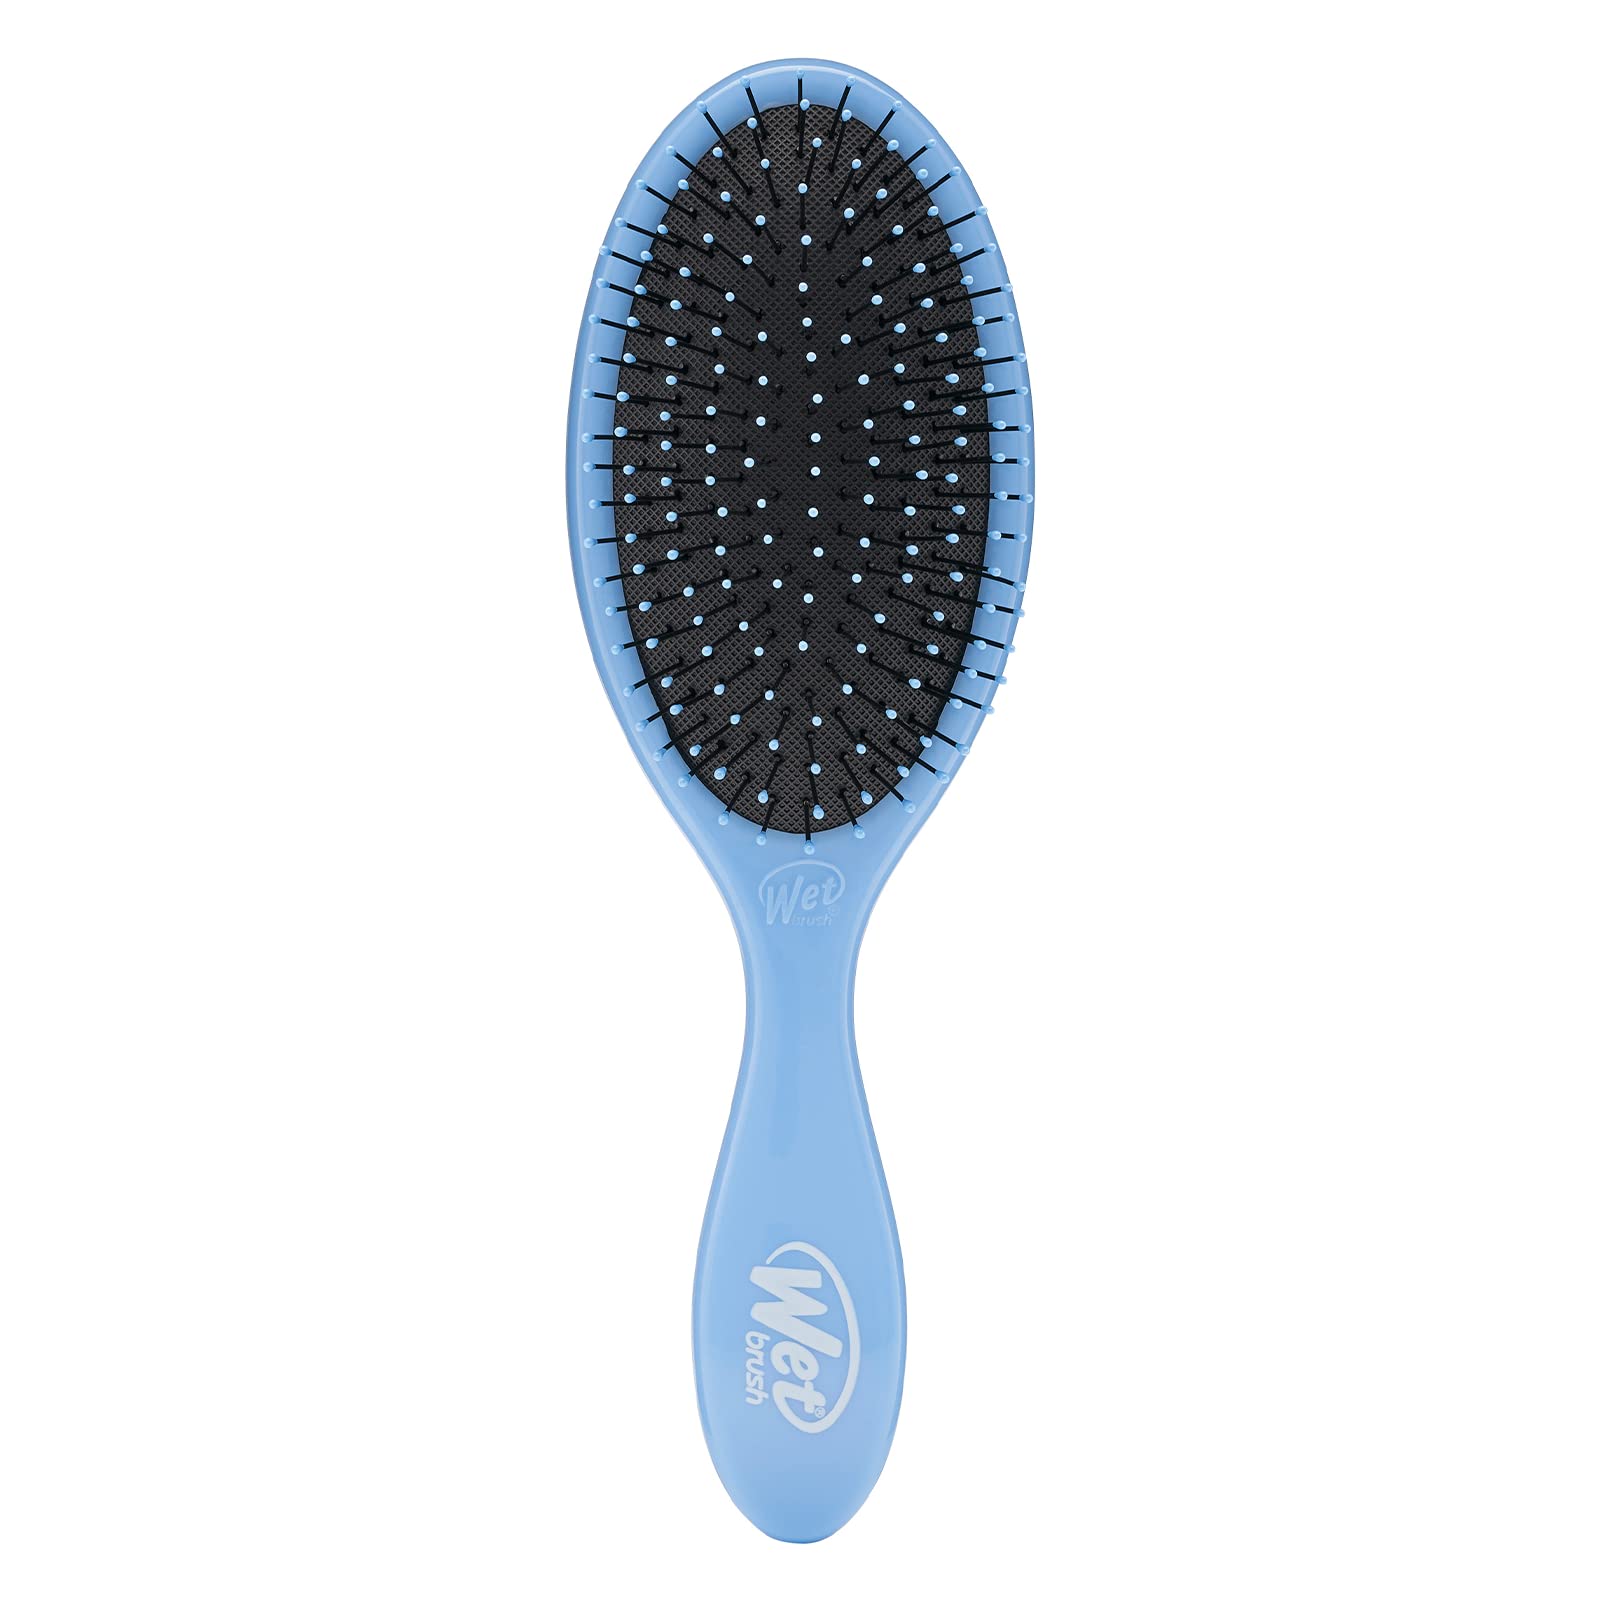 Wet Brush Original Detangler Brush - Sky - All Hair Types - Ultra-Soft IntelliFlex Bristles Glide Through Tangles with Ease - Pain-Free Comb for Men, Women, Boys and Girls